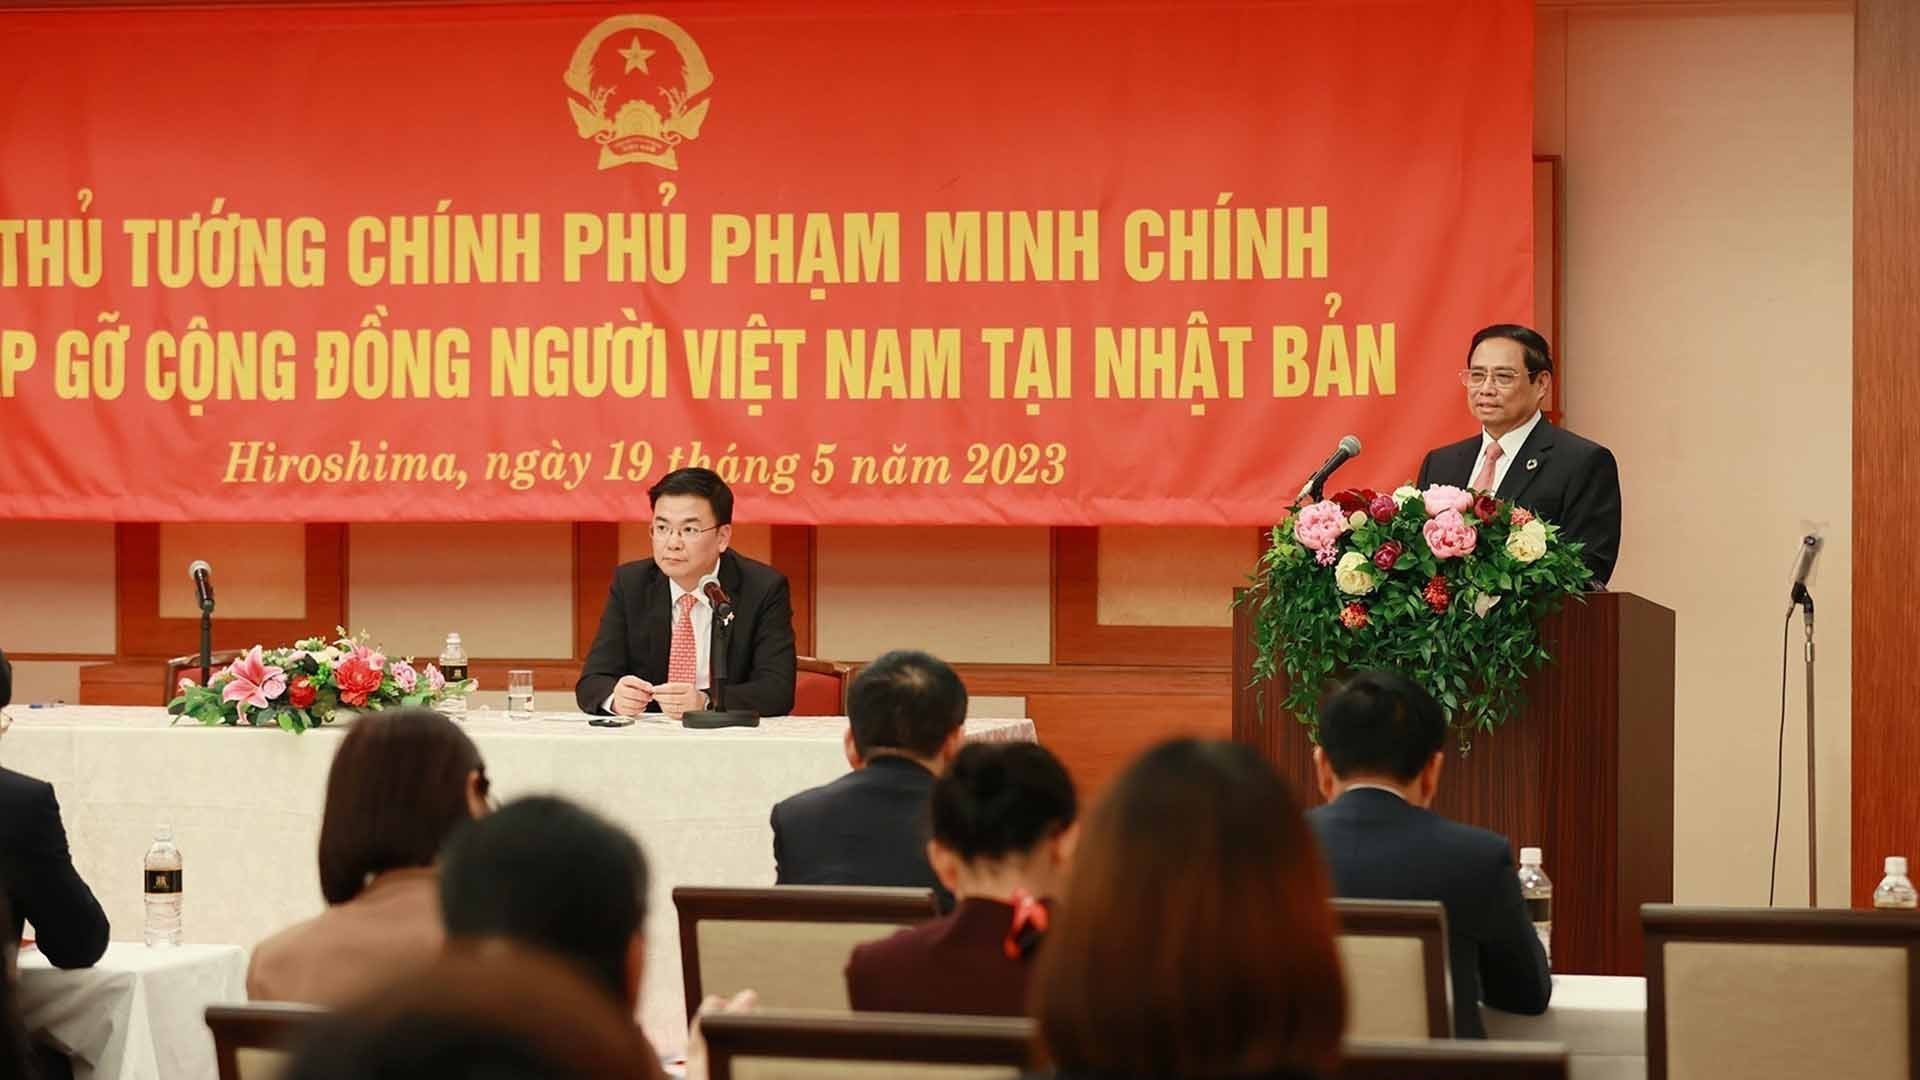 Thủ tướng Phạm Minh Chính gặp cộng đồng người Việt Nam tại Nhật Bản